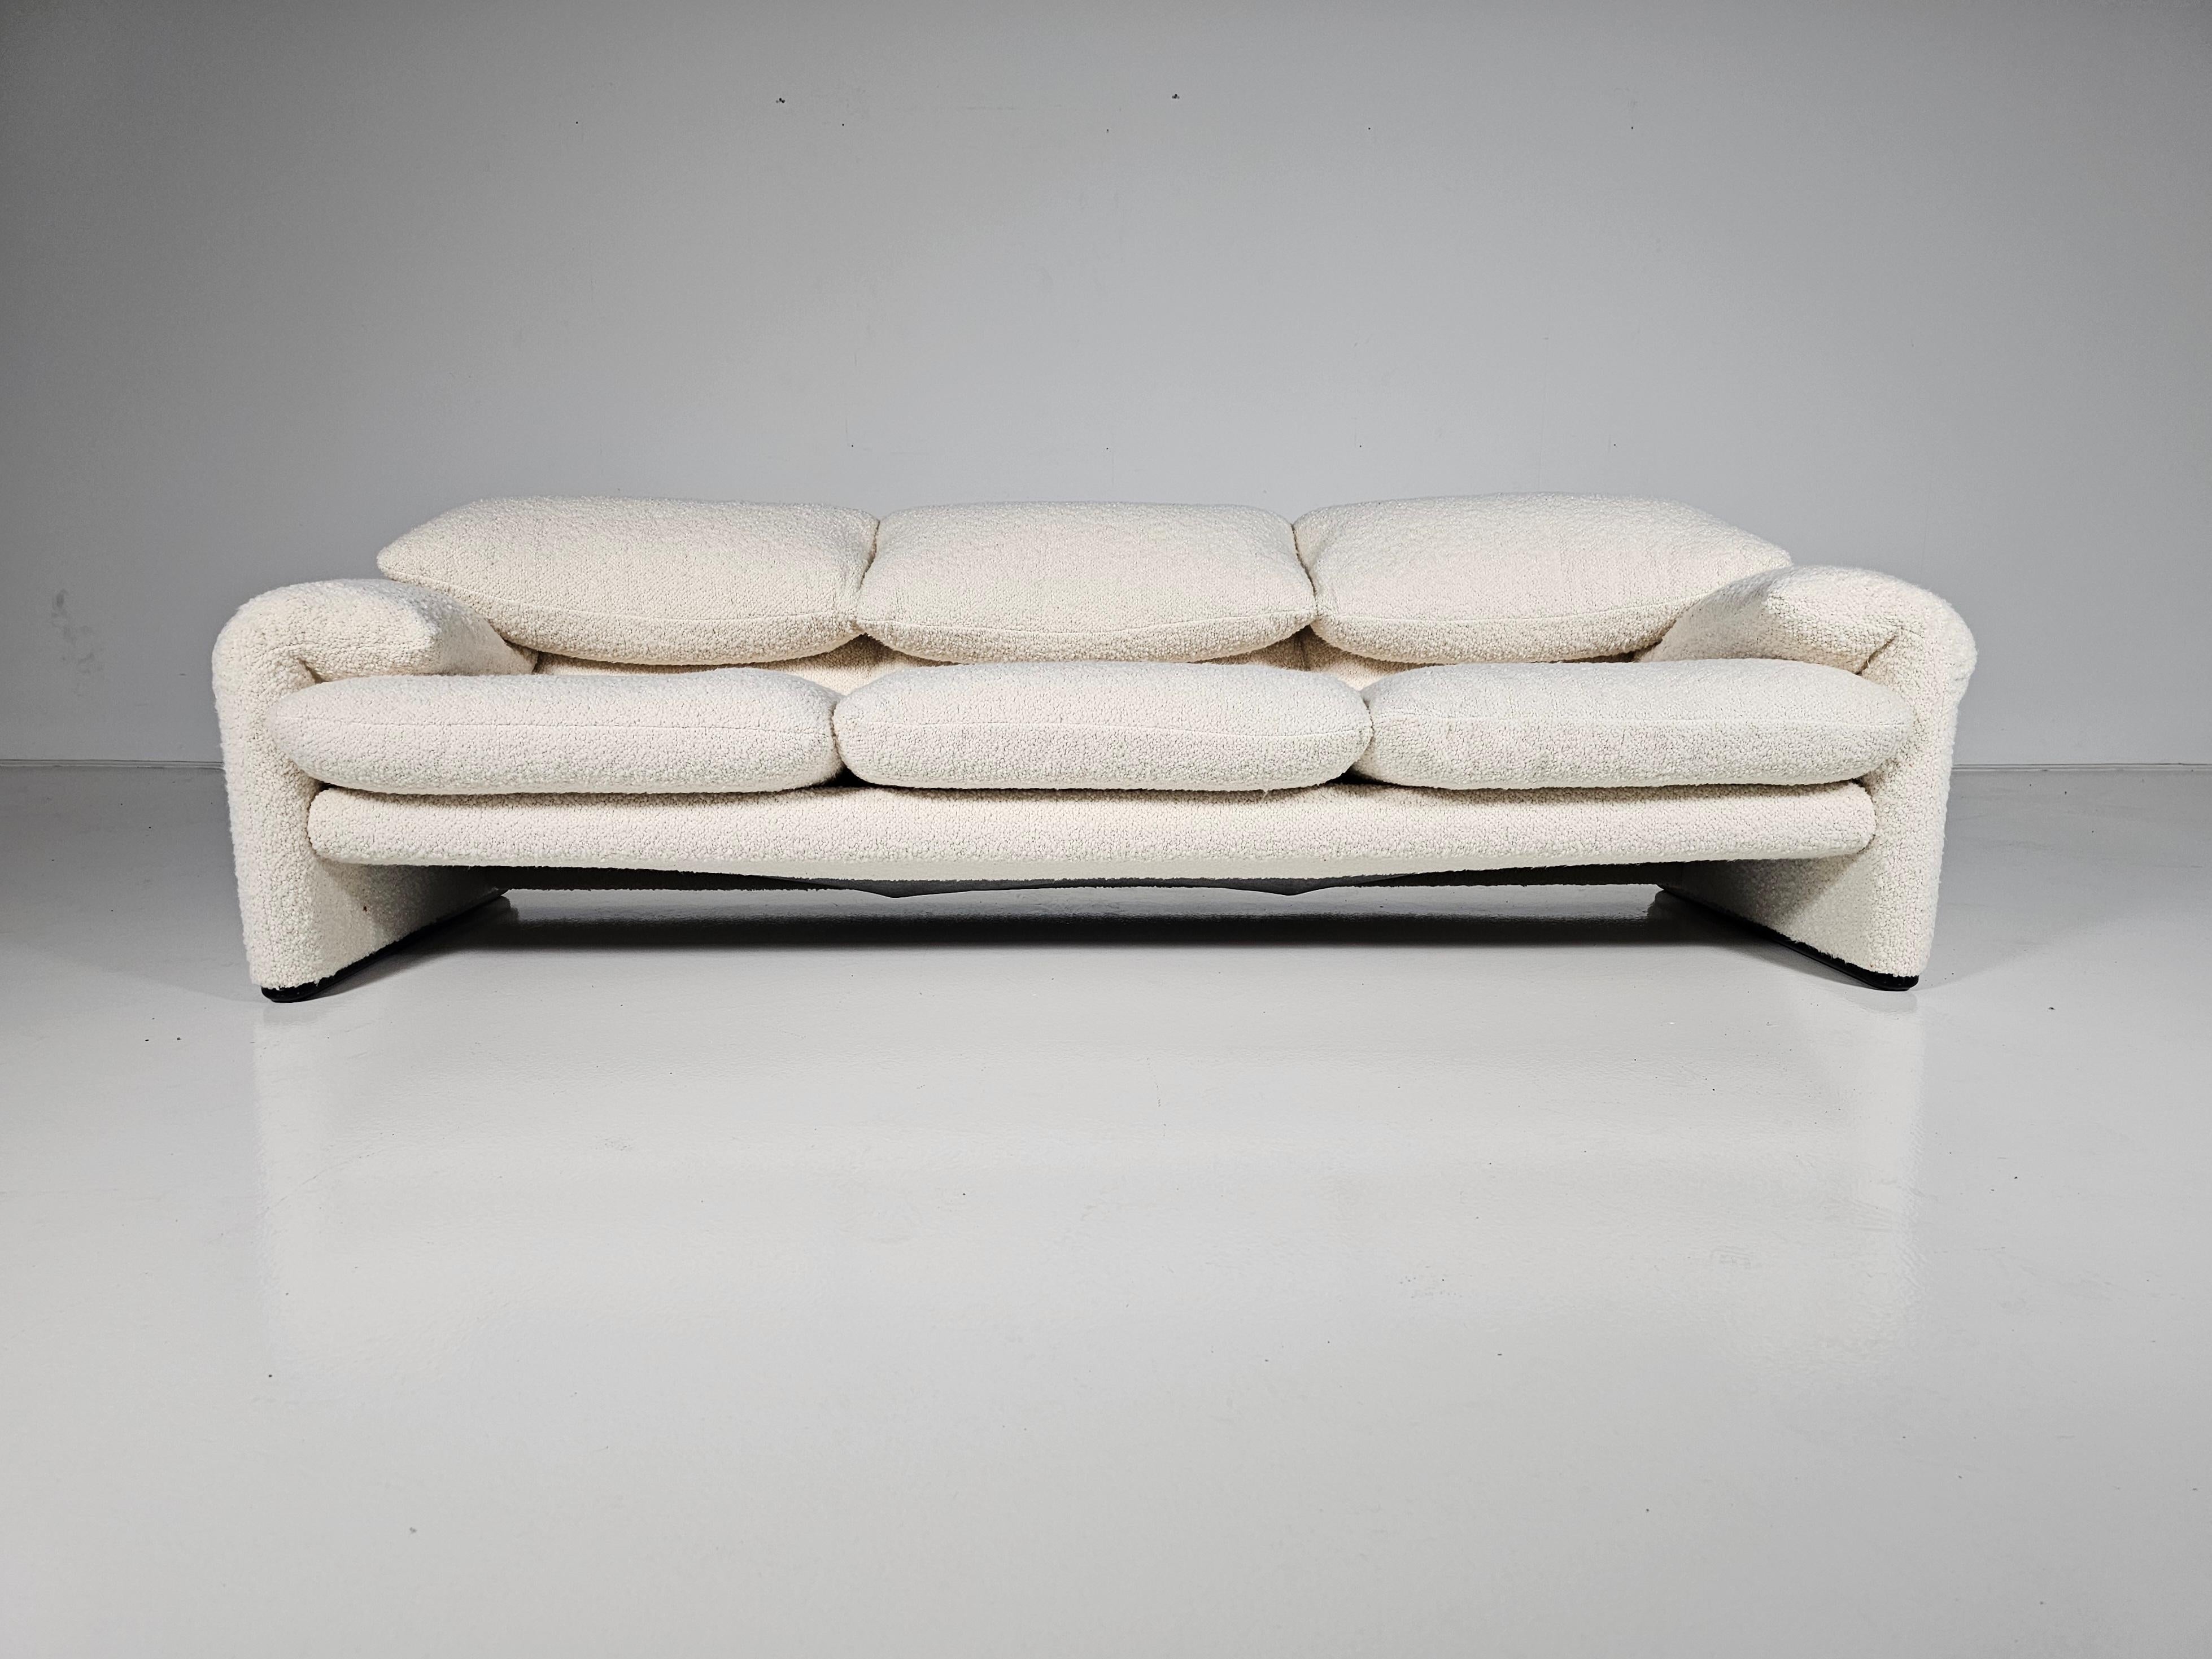 Ce canapé Maralunga a été conçu par Vico Magistretti pour Cassina en 1973. Il s'agit d'une version originale des années soixante-dix. Rembourré en bouclette crème duveteuse. Avec structure en acier. Le dossier peut être relevé ou abaissé pour un